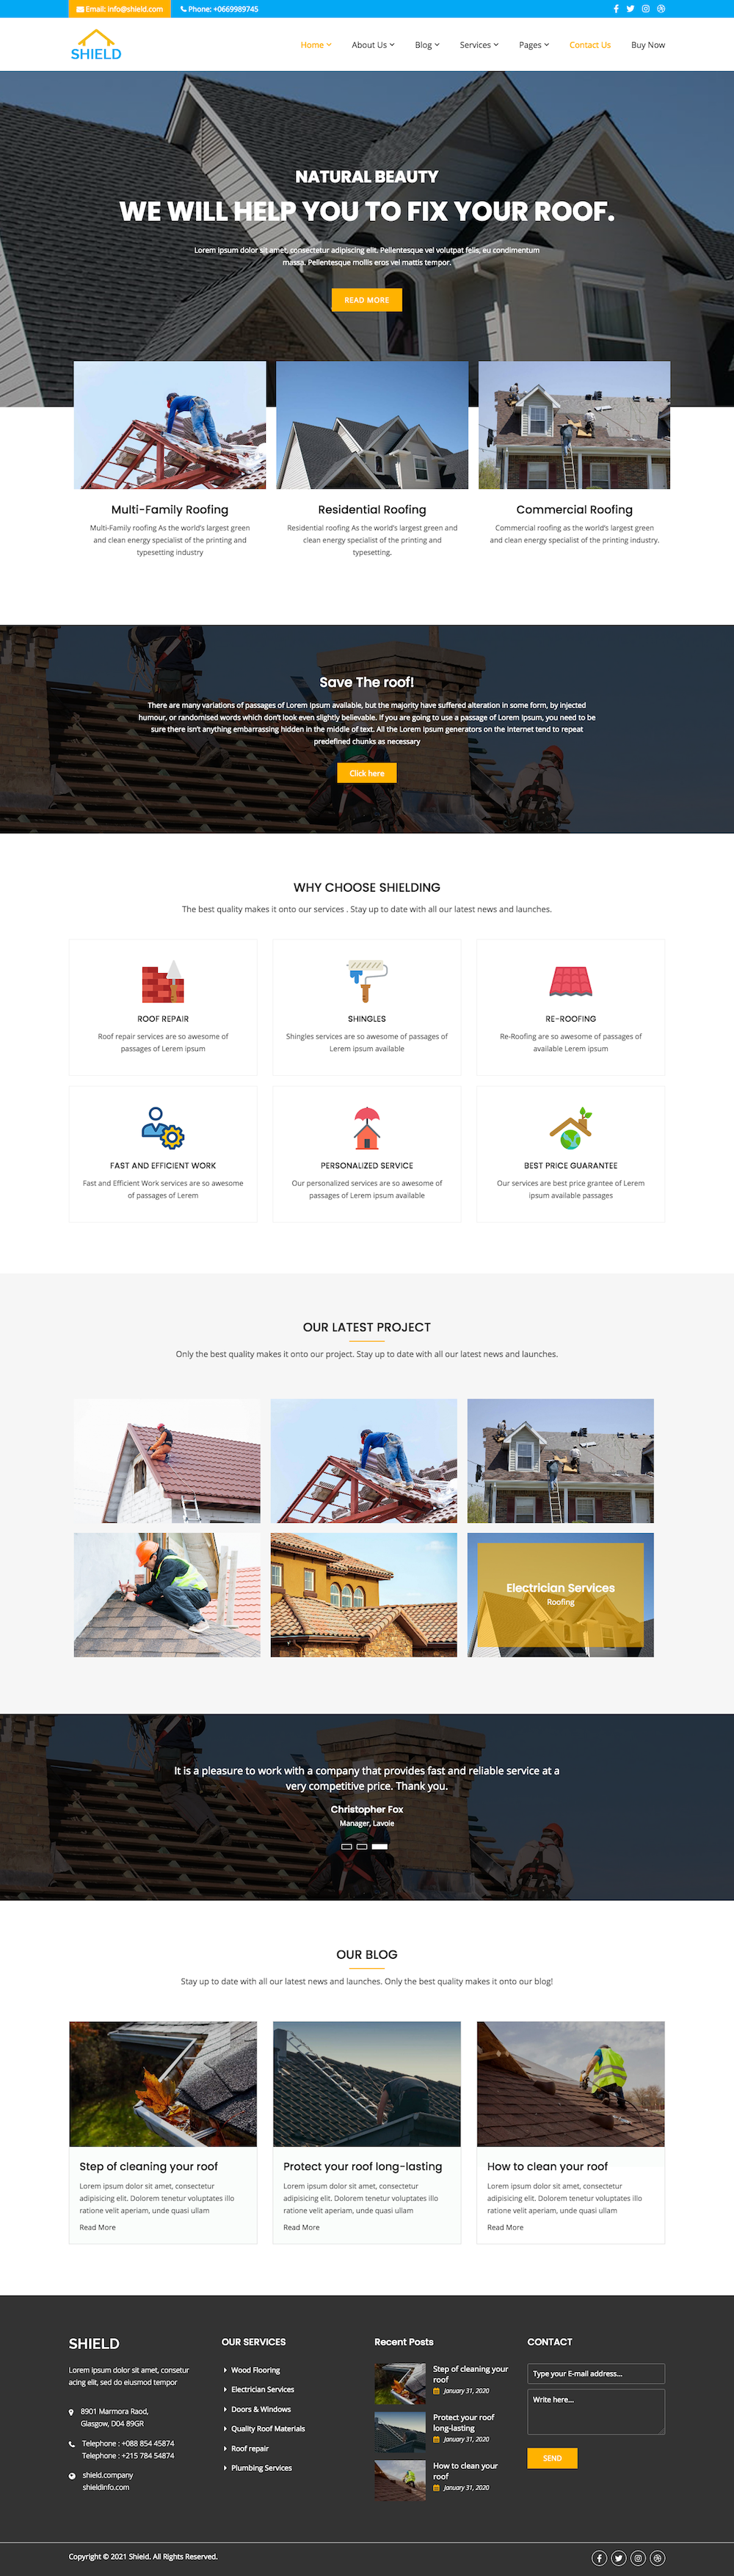 Roofing Contractors Website